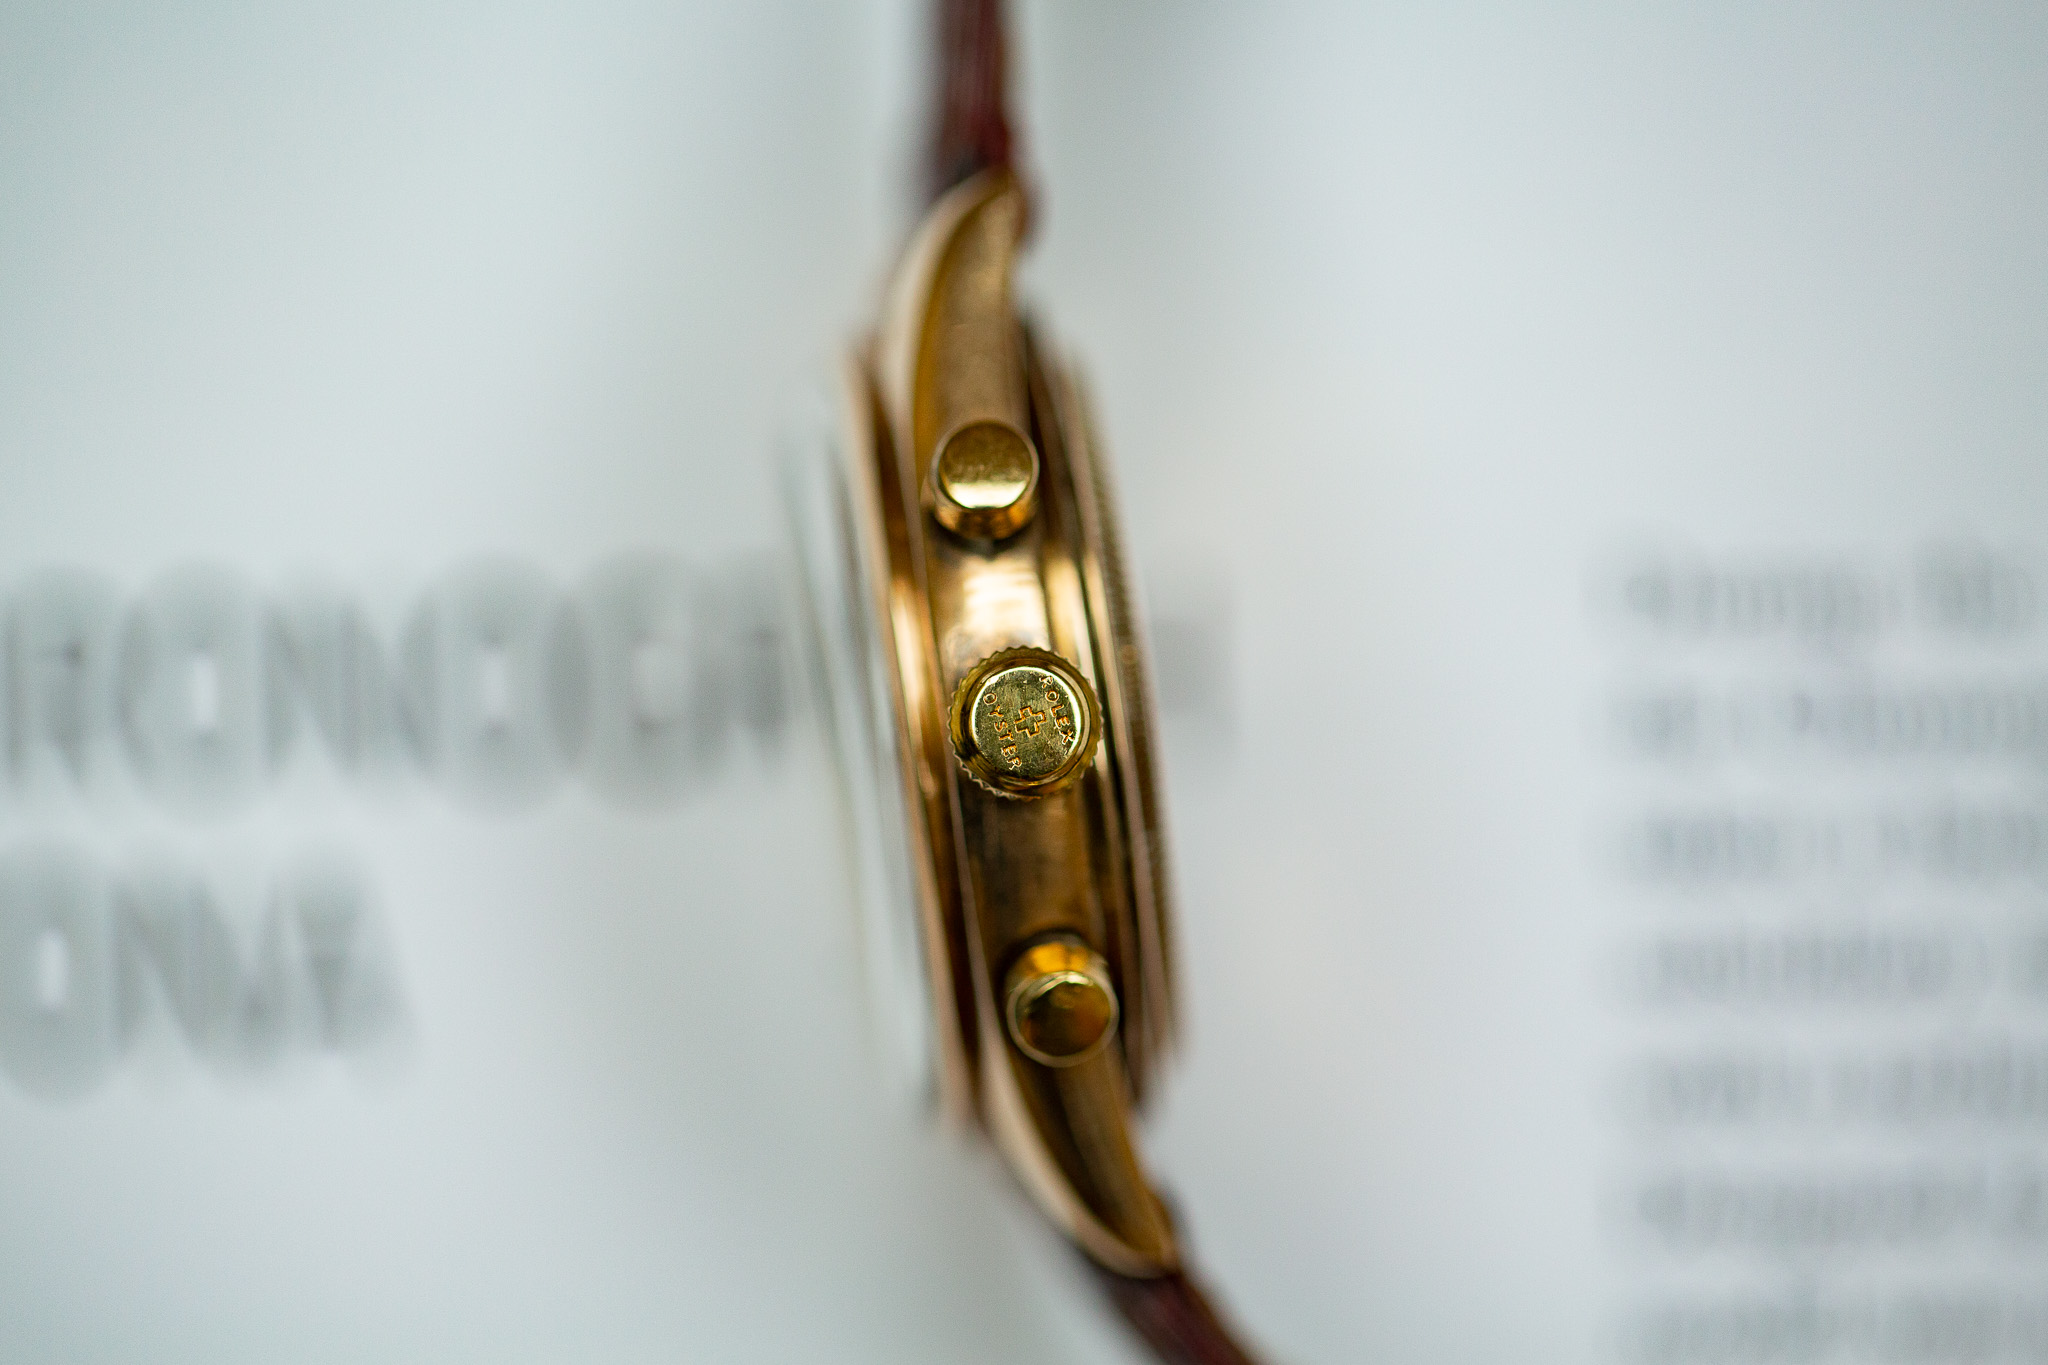 Rolex chronographe 4537 - Bonhams Cornette de Saint Cyr